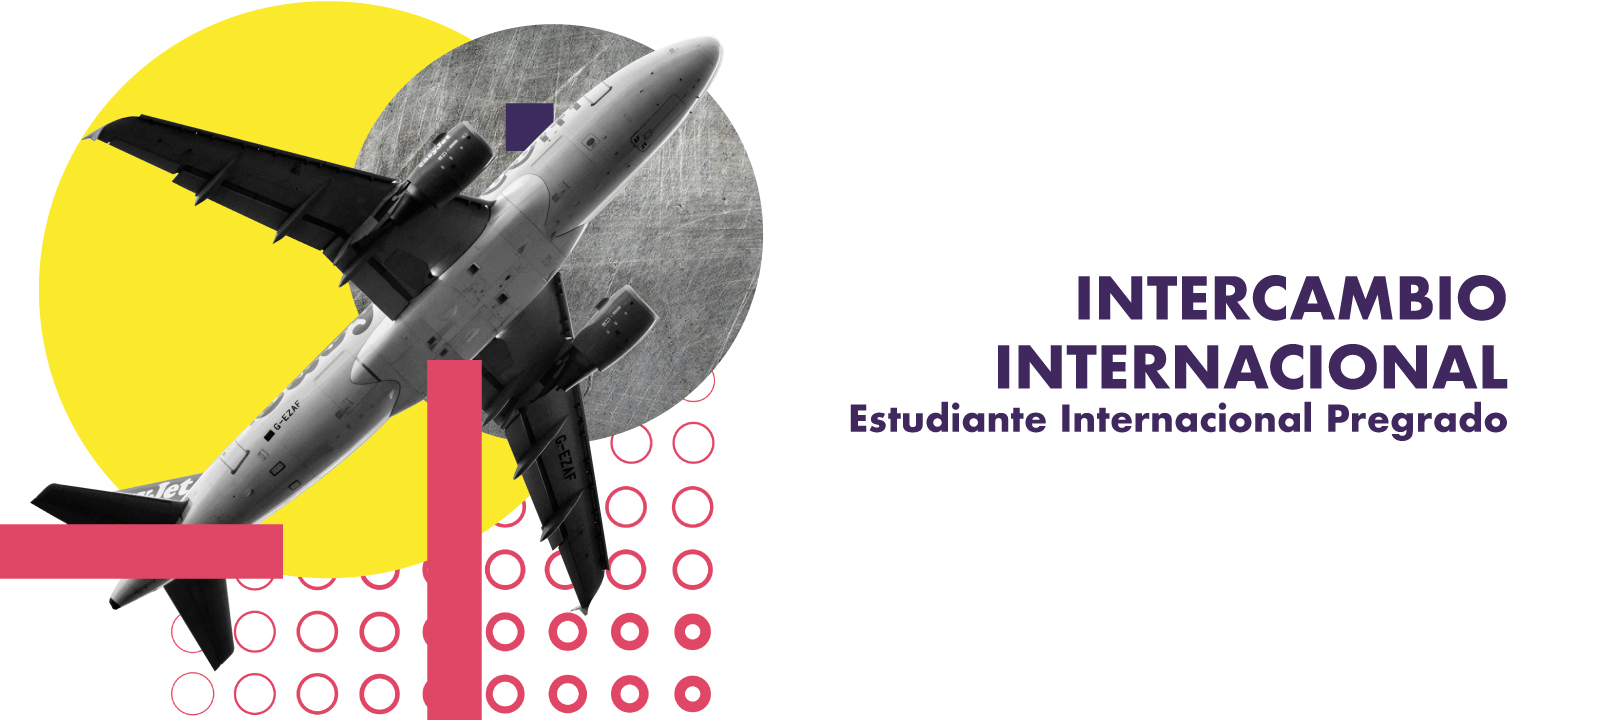 Banner de la Universidad de los Andes sobre intercambio internacional